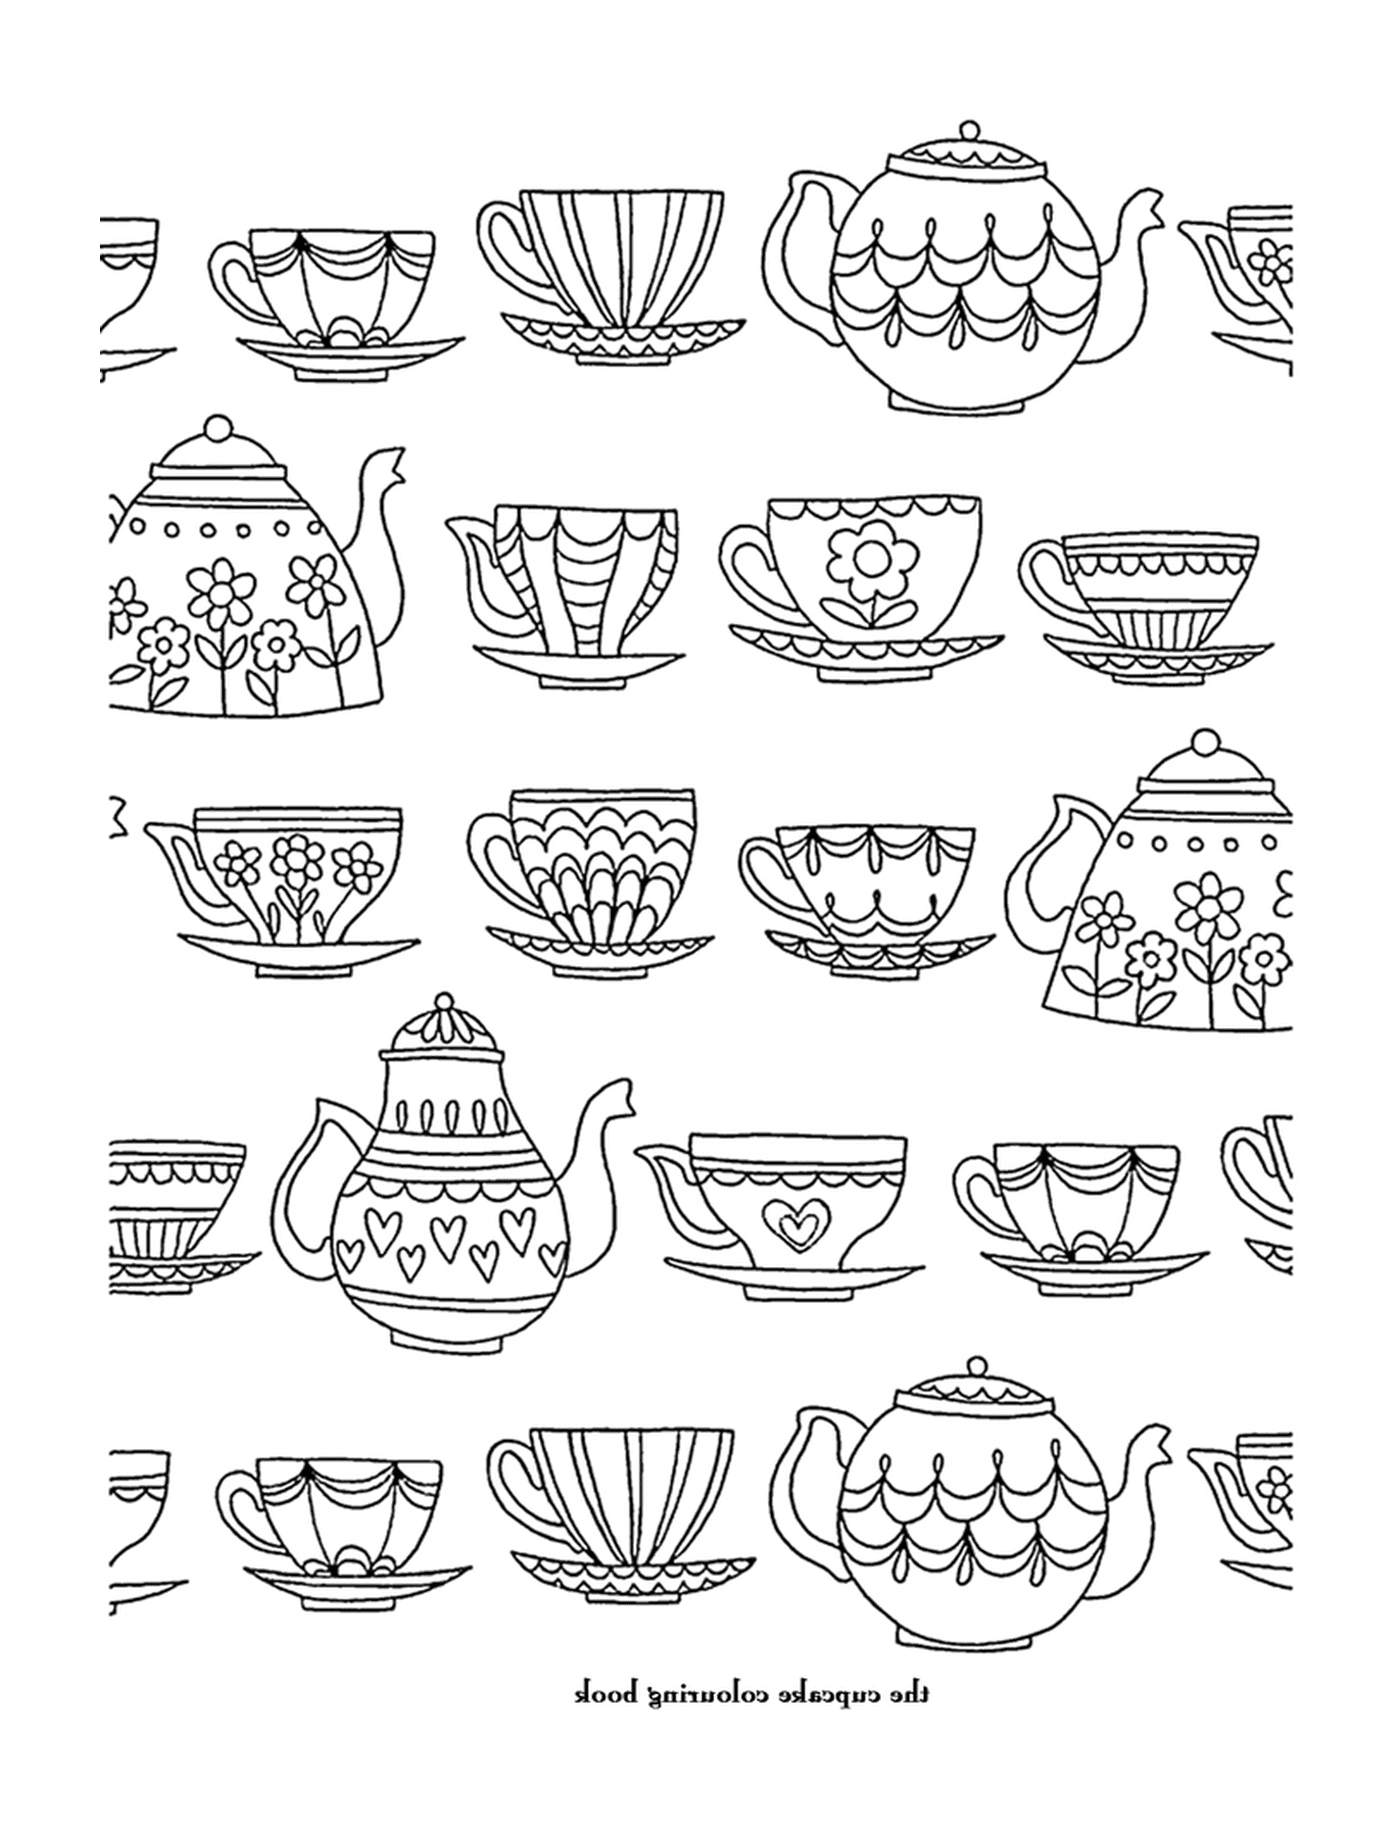  Un modello di tazze e teiere 